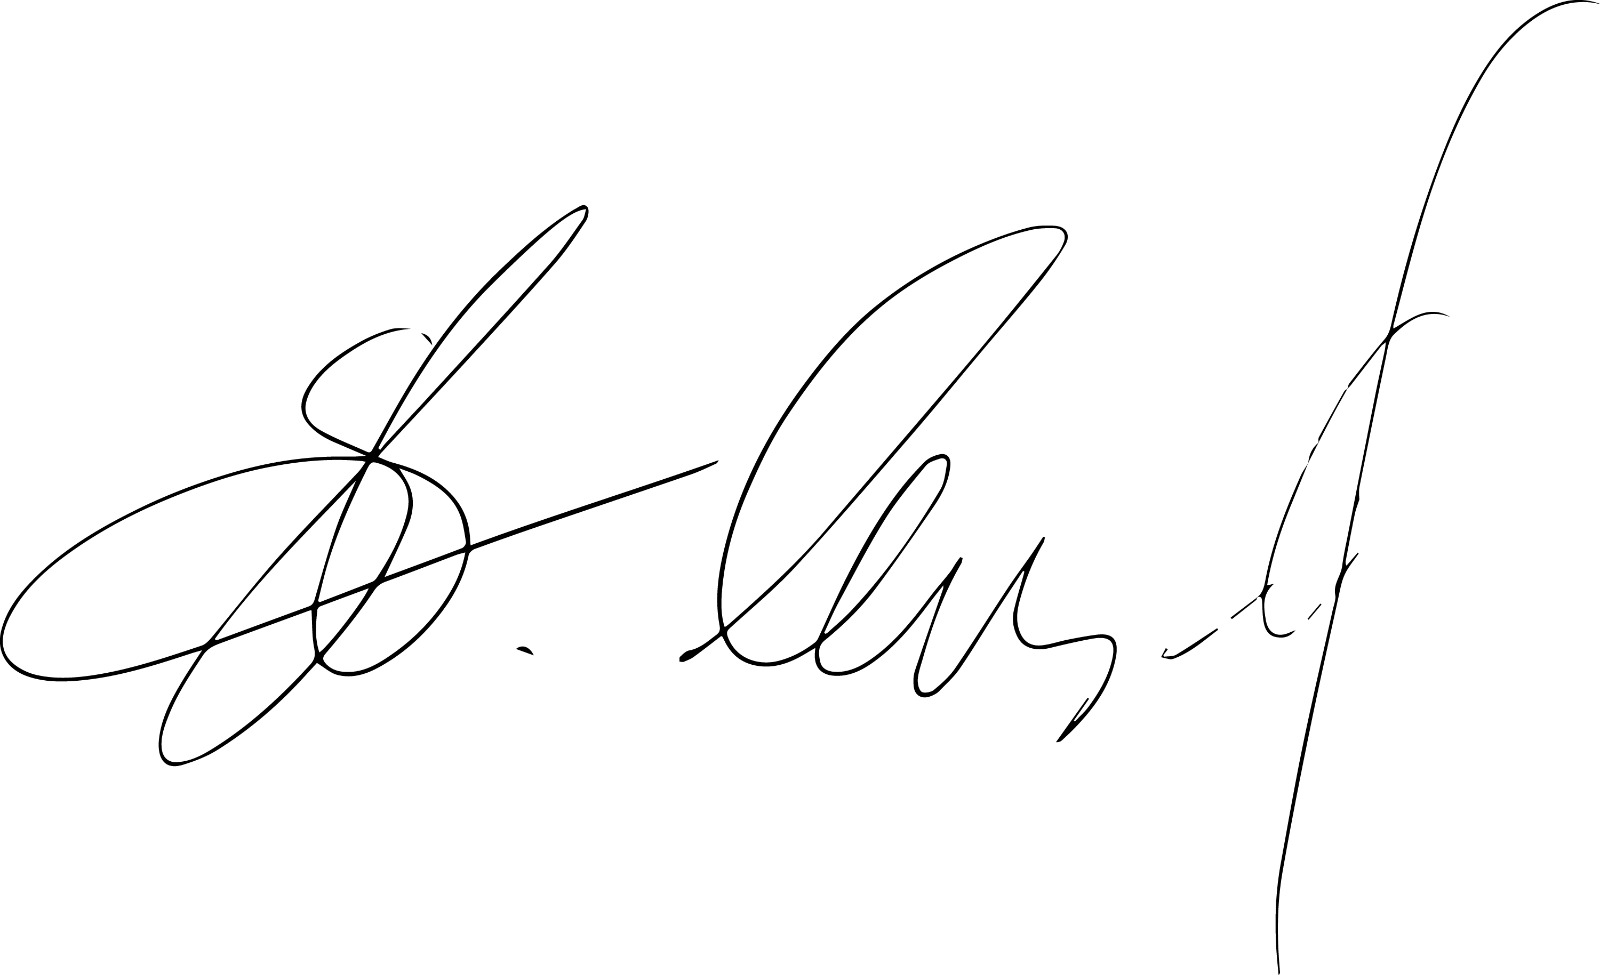 Stefan's signature